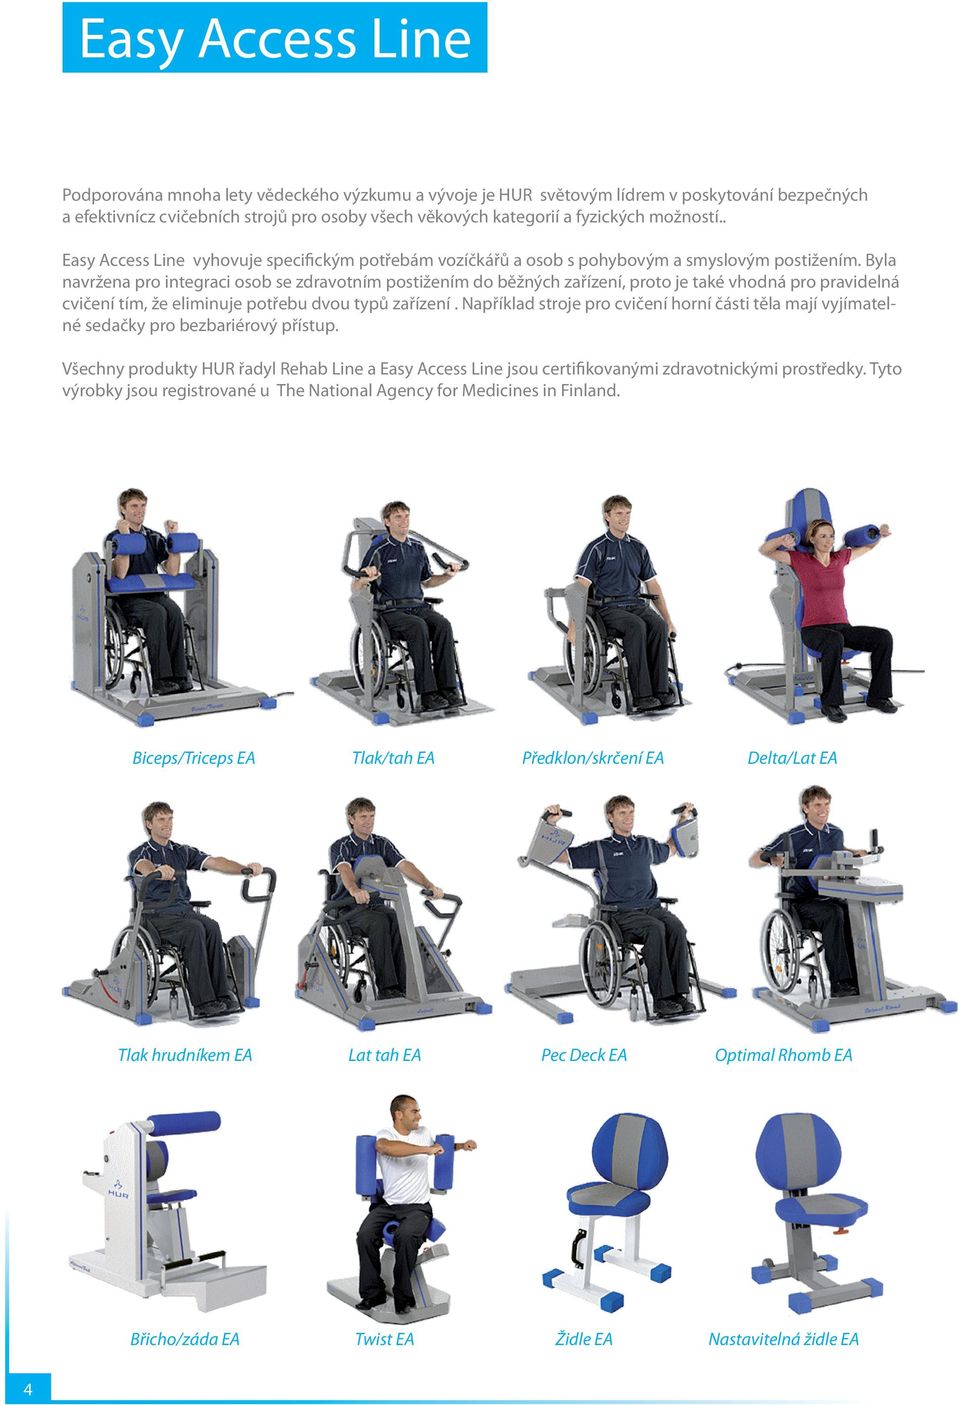 Byla navržena pro integraci osob se zdravotním postižením do běžných zařízení, proto je také vhodná pro pravidelná cvičení tím, že eliminuje potřebu dvou typů zařízení.